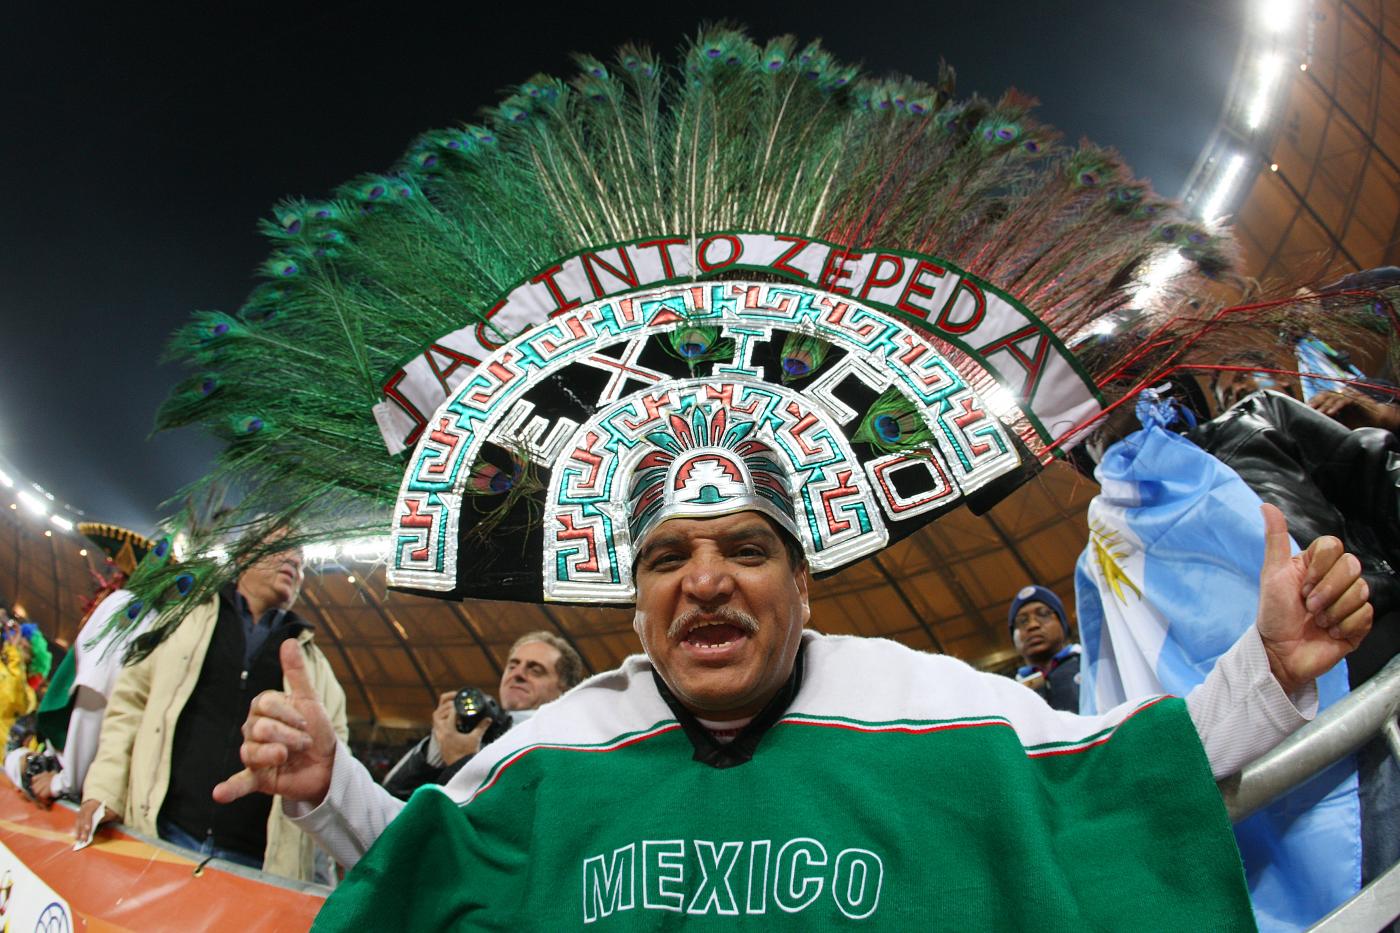 Copa Mexico giovedì 14 marzo. In Messico quarti di finale della coppa nazionale messicana. Si gioca in gara secca